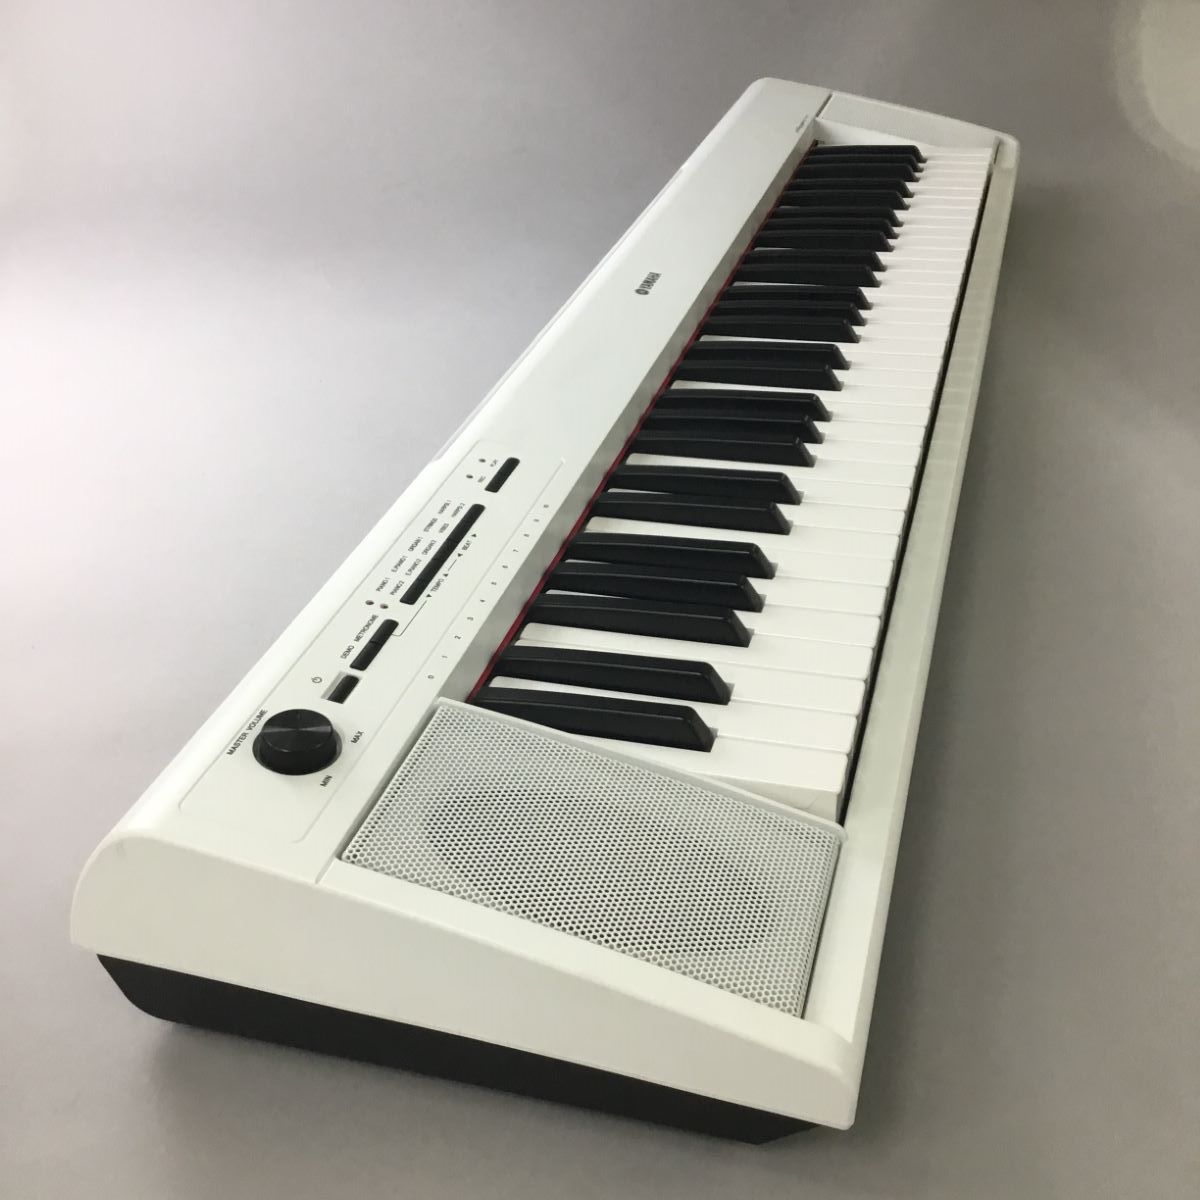 ヤマハ YAMAHA 電子ピアノ ピアジェーロ 61鍵盤 np-12 キーボード 